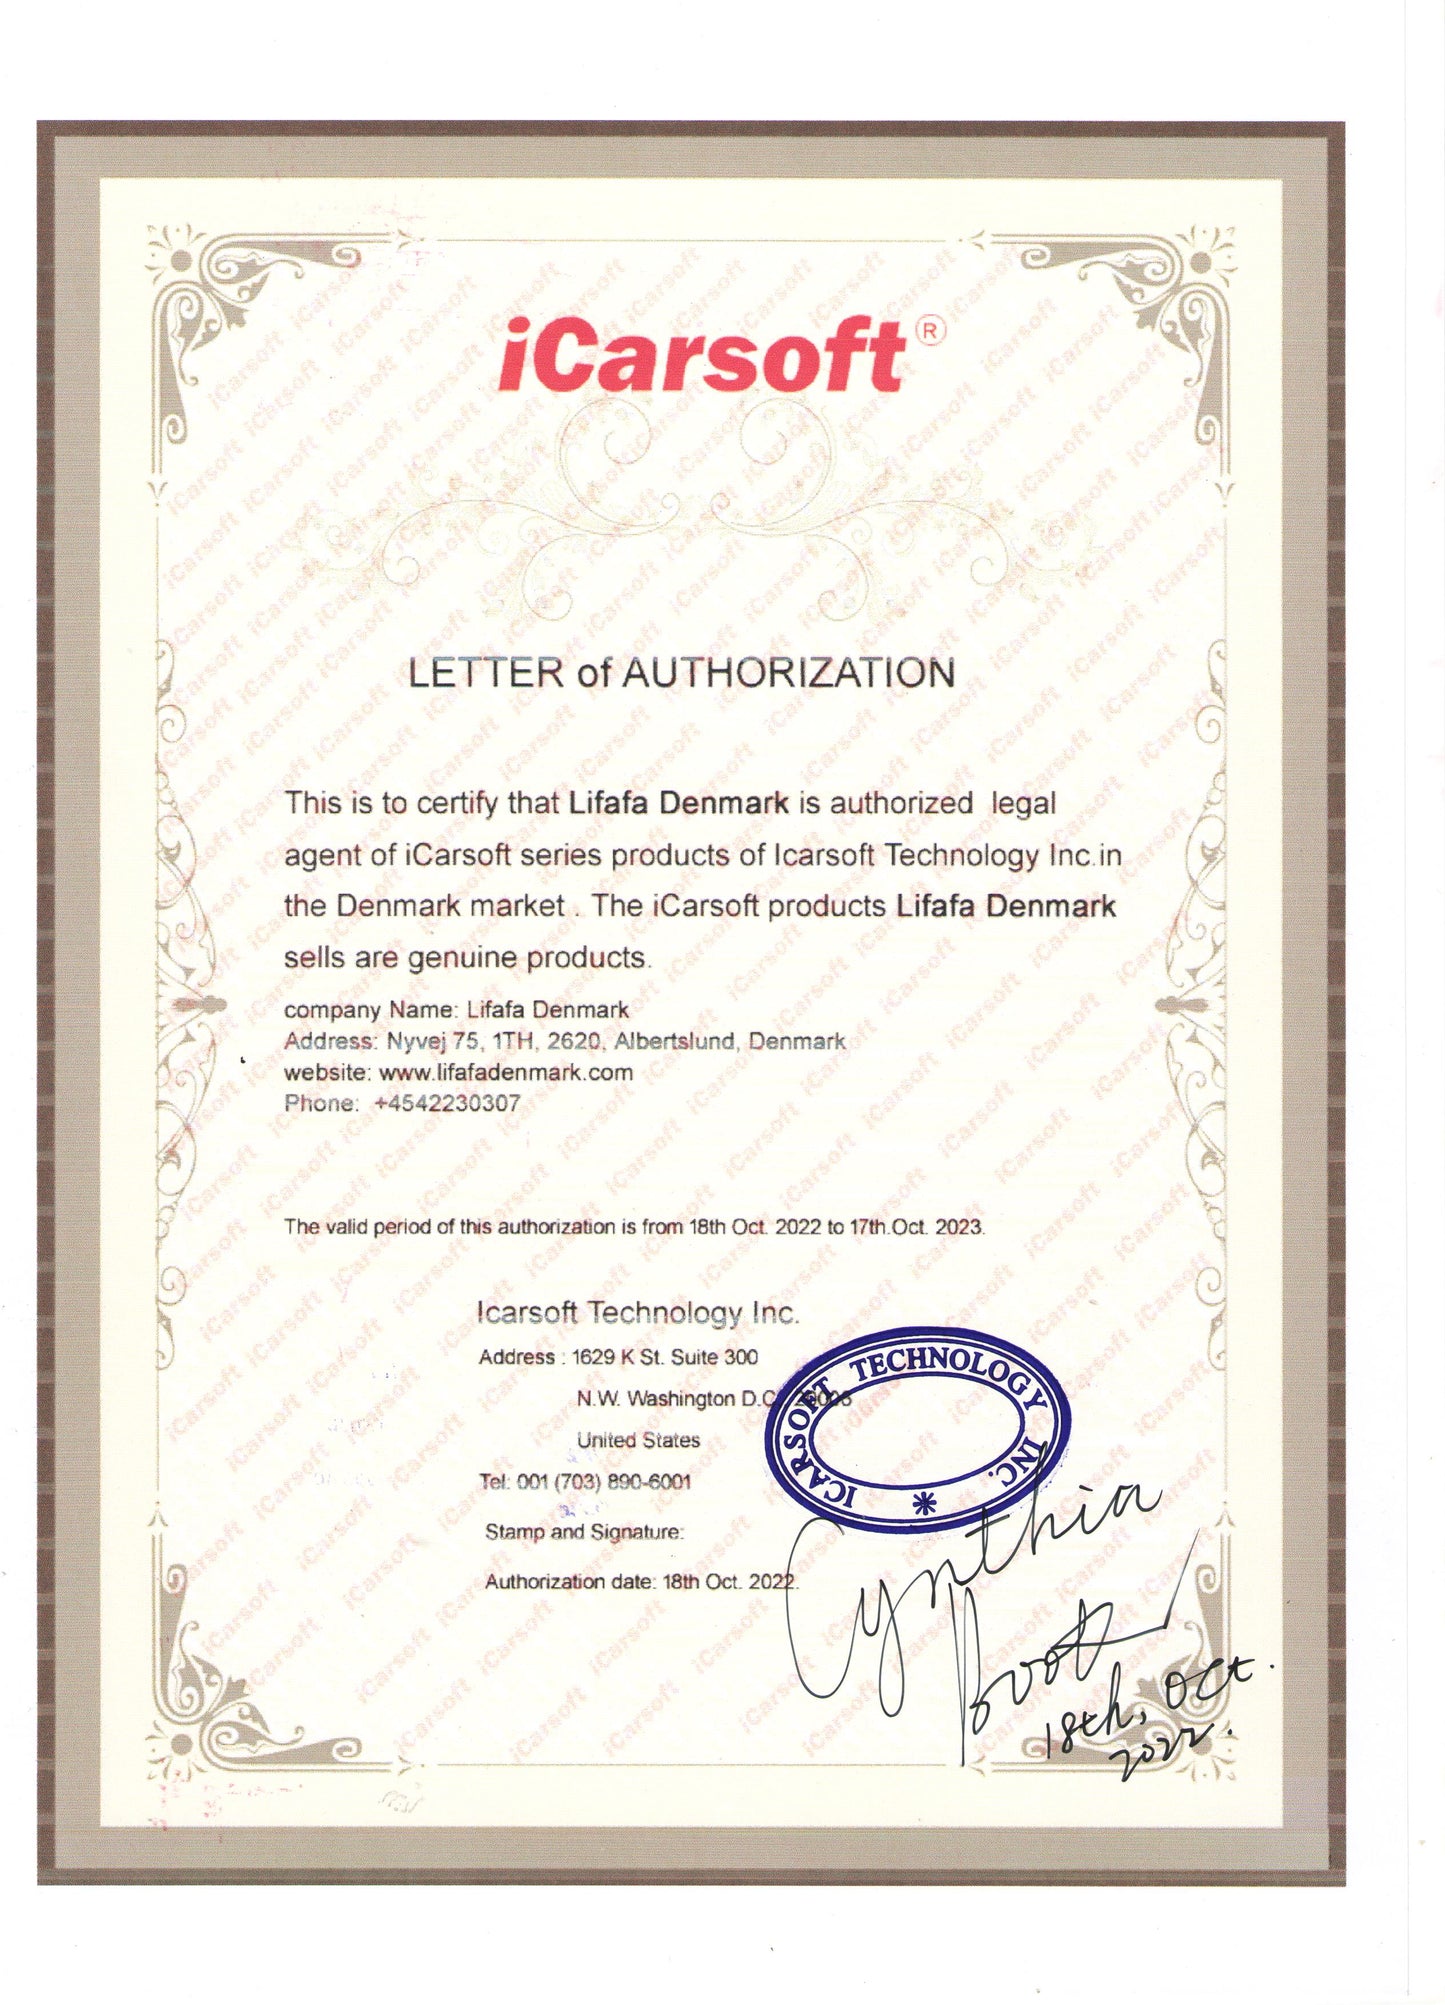 Icarsoft MB V3.0 For Mercedes-Benz Sprinter Smart Multi System Diagnostic Scan Tool